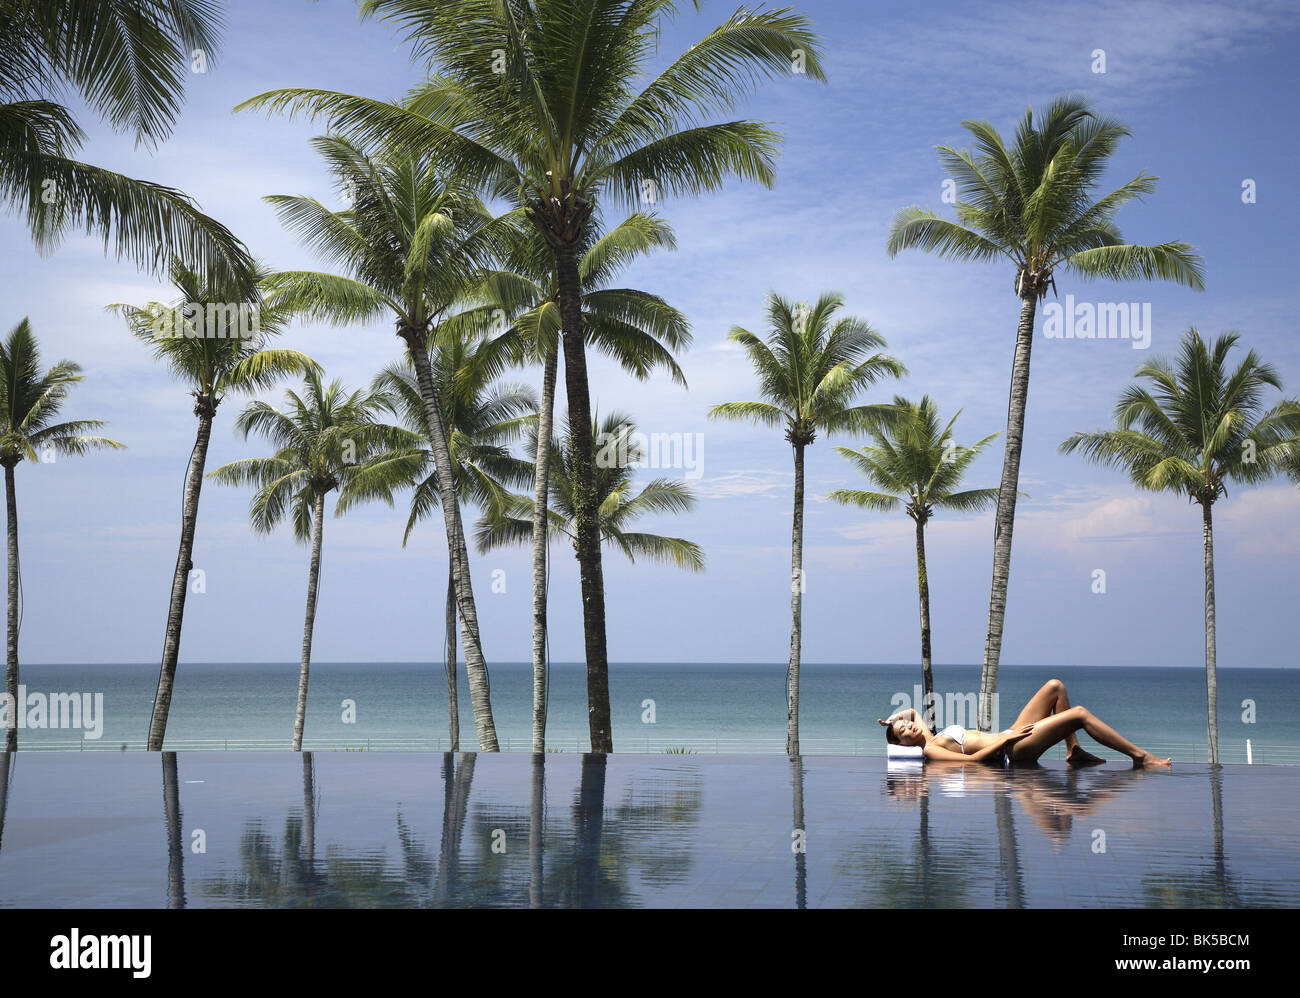 Mujer joven relajándose en la piscina con palmeras y el mar Foto de stock